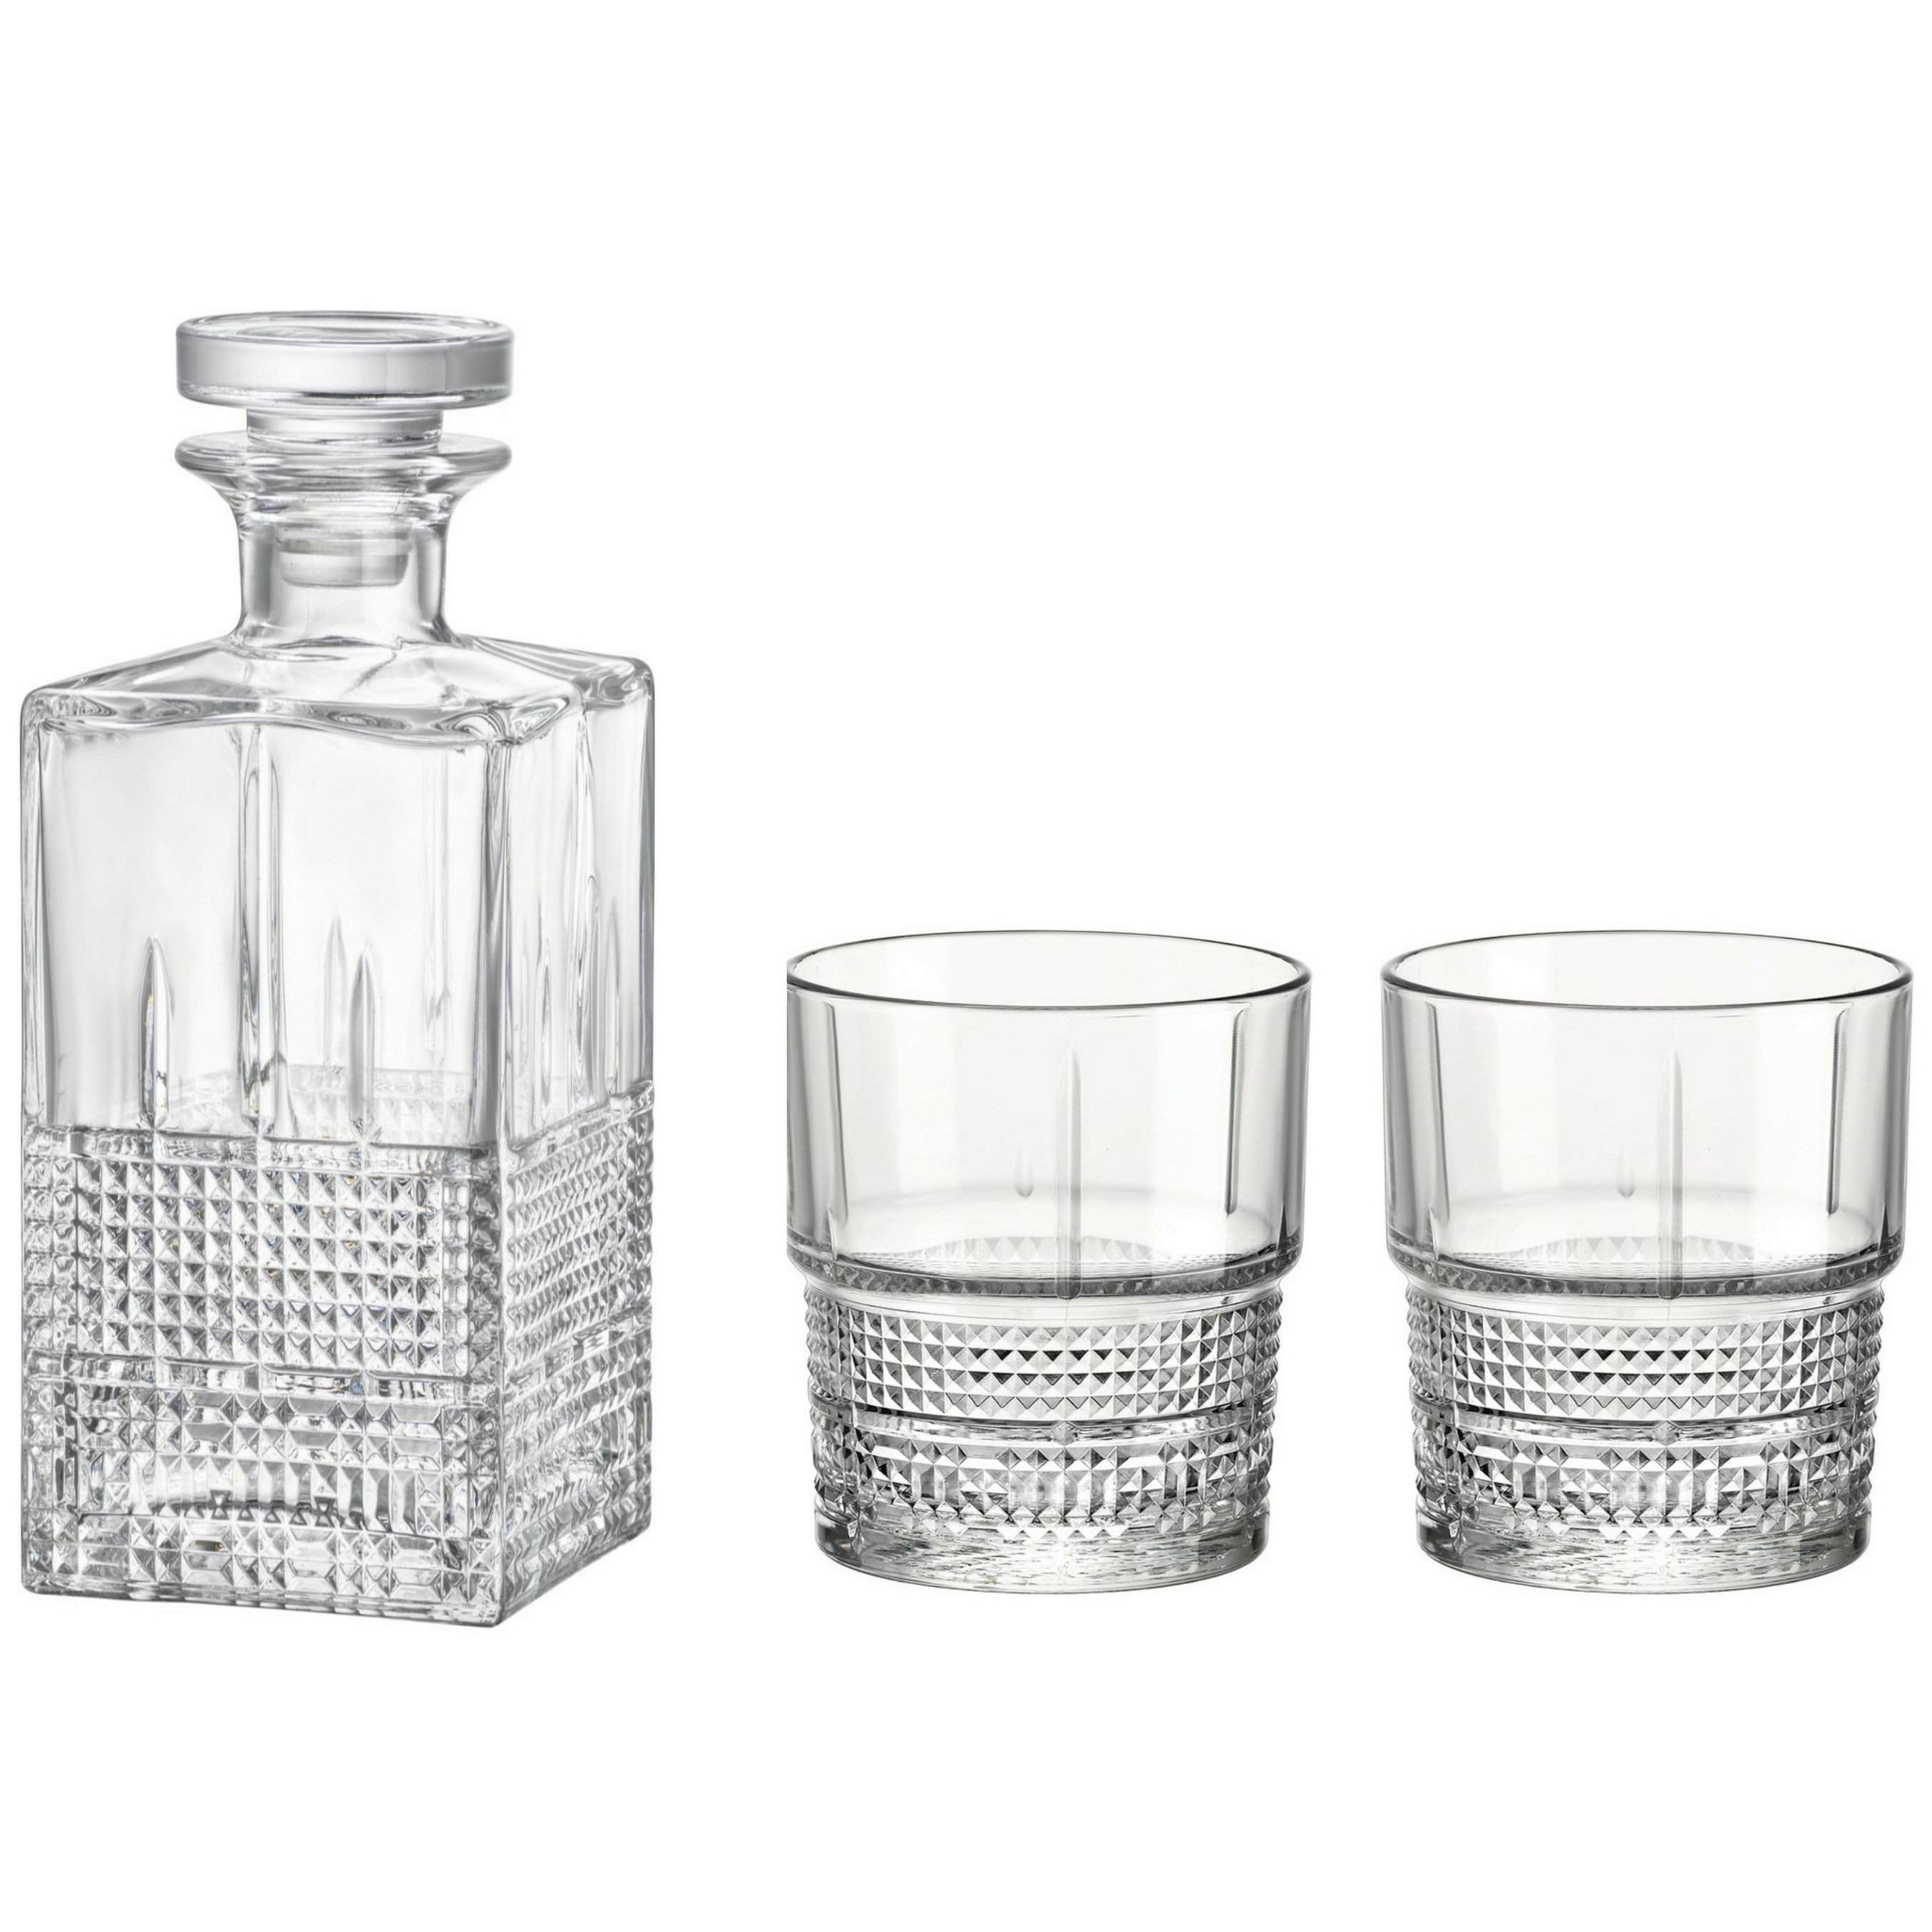 Bormioli Whisky set - 7 delig - 6 glazen - karaf - Novecento? serie -